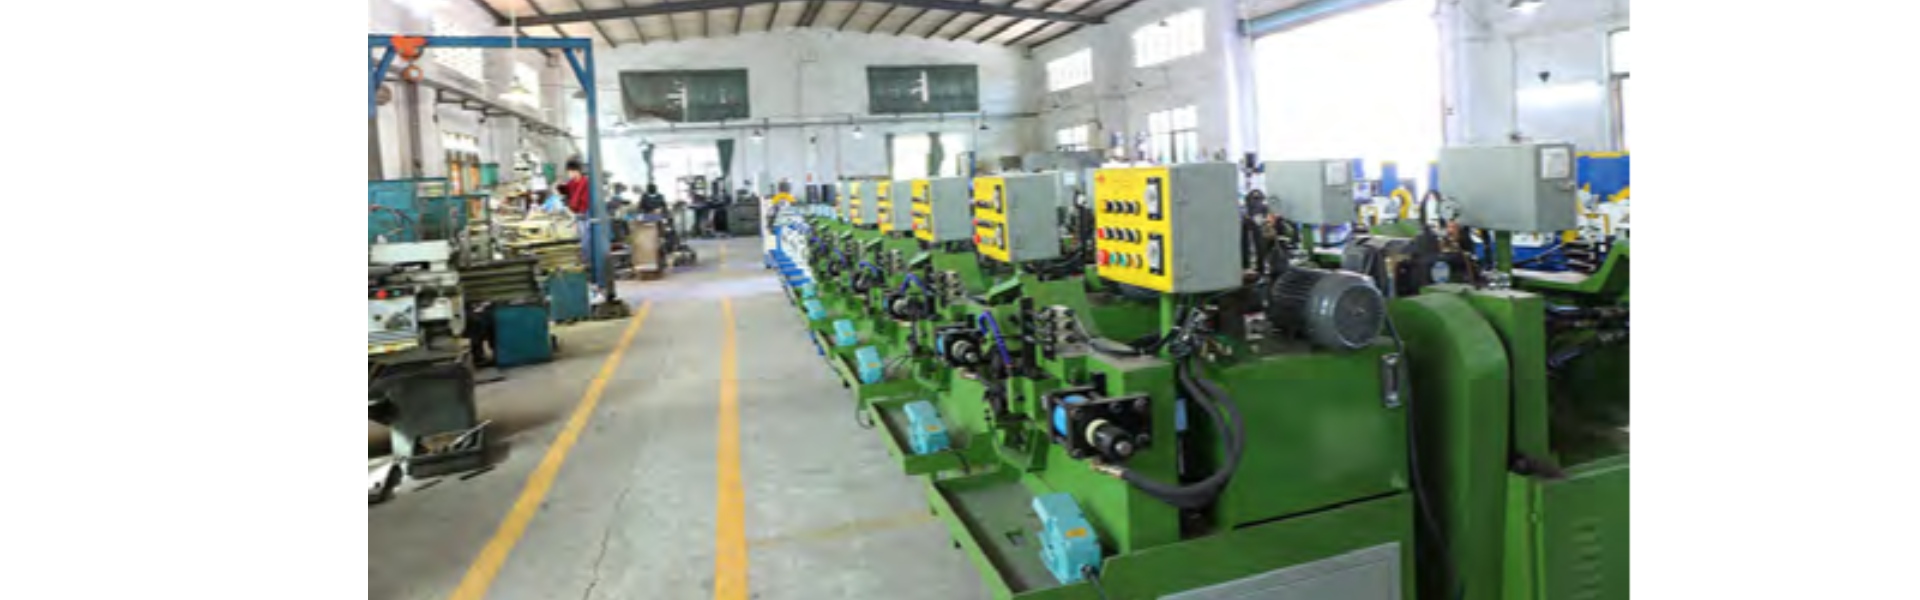 압연 롤러 공 형 기, 자동 파이프 절단 기, 전자 동 기어 롤러,Dongguan Hongbo Precision Machinery Manufacturing Co.,Ltd.